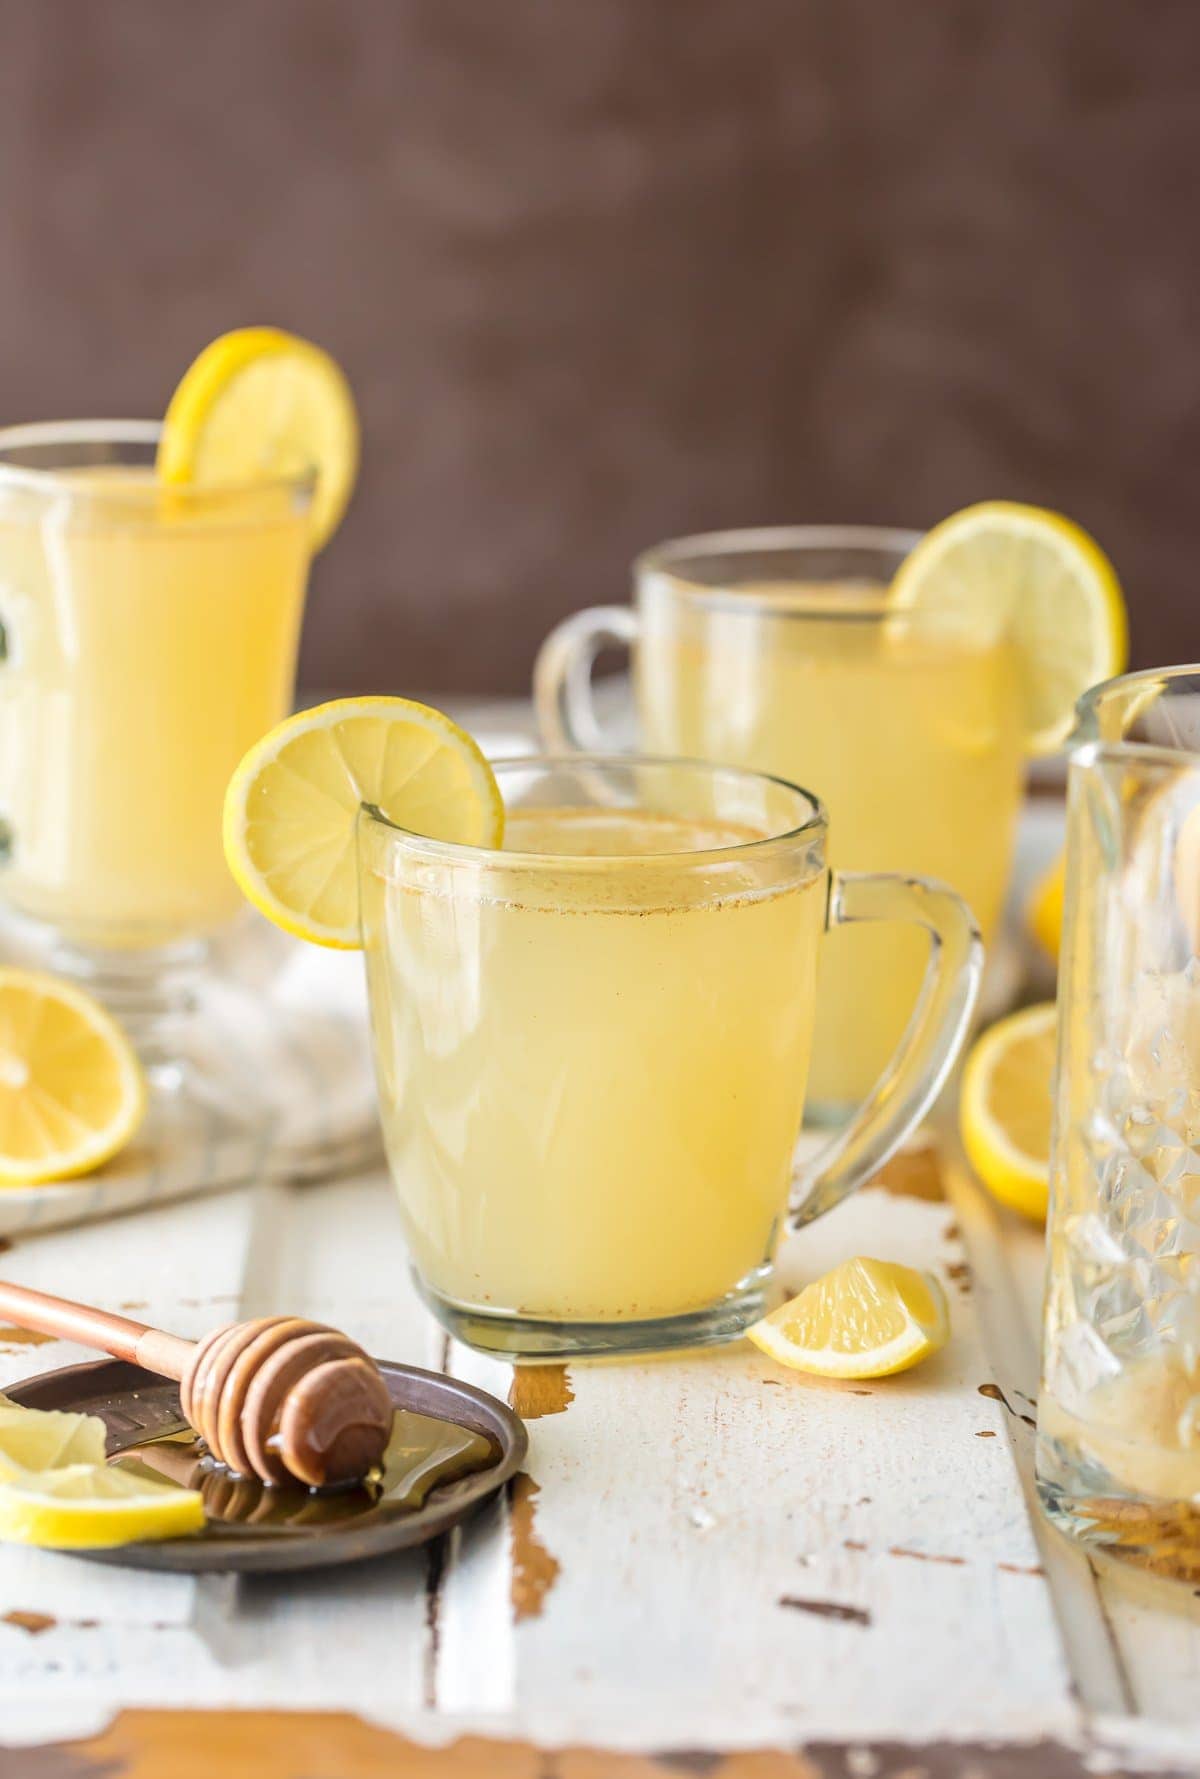 Homemade Detox Lemonade Cleanse